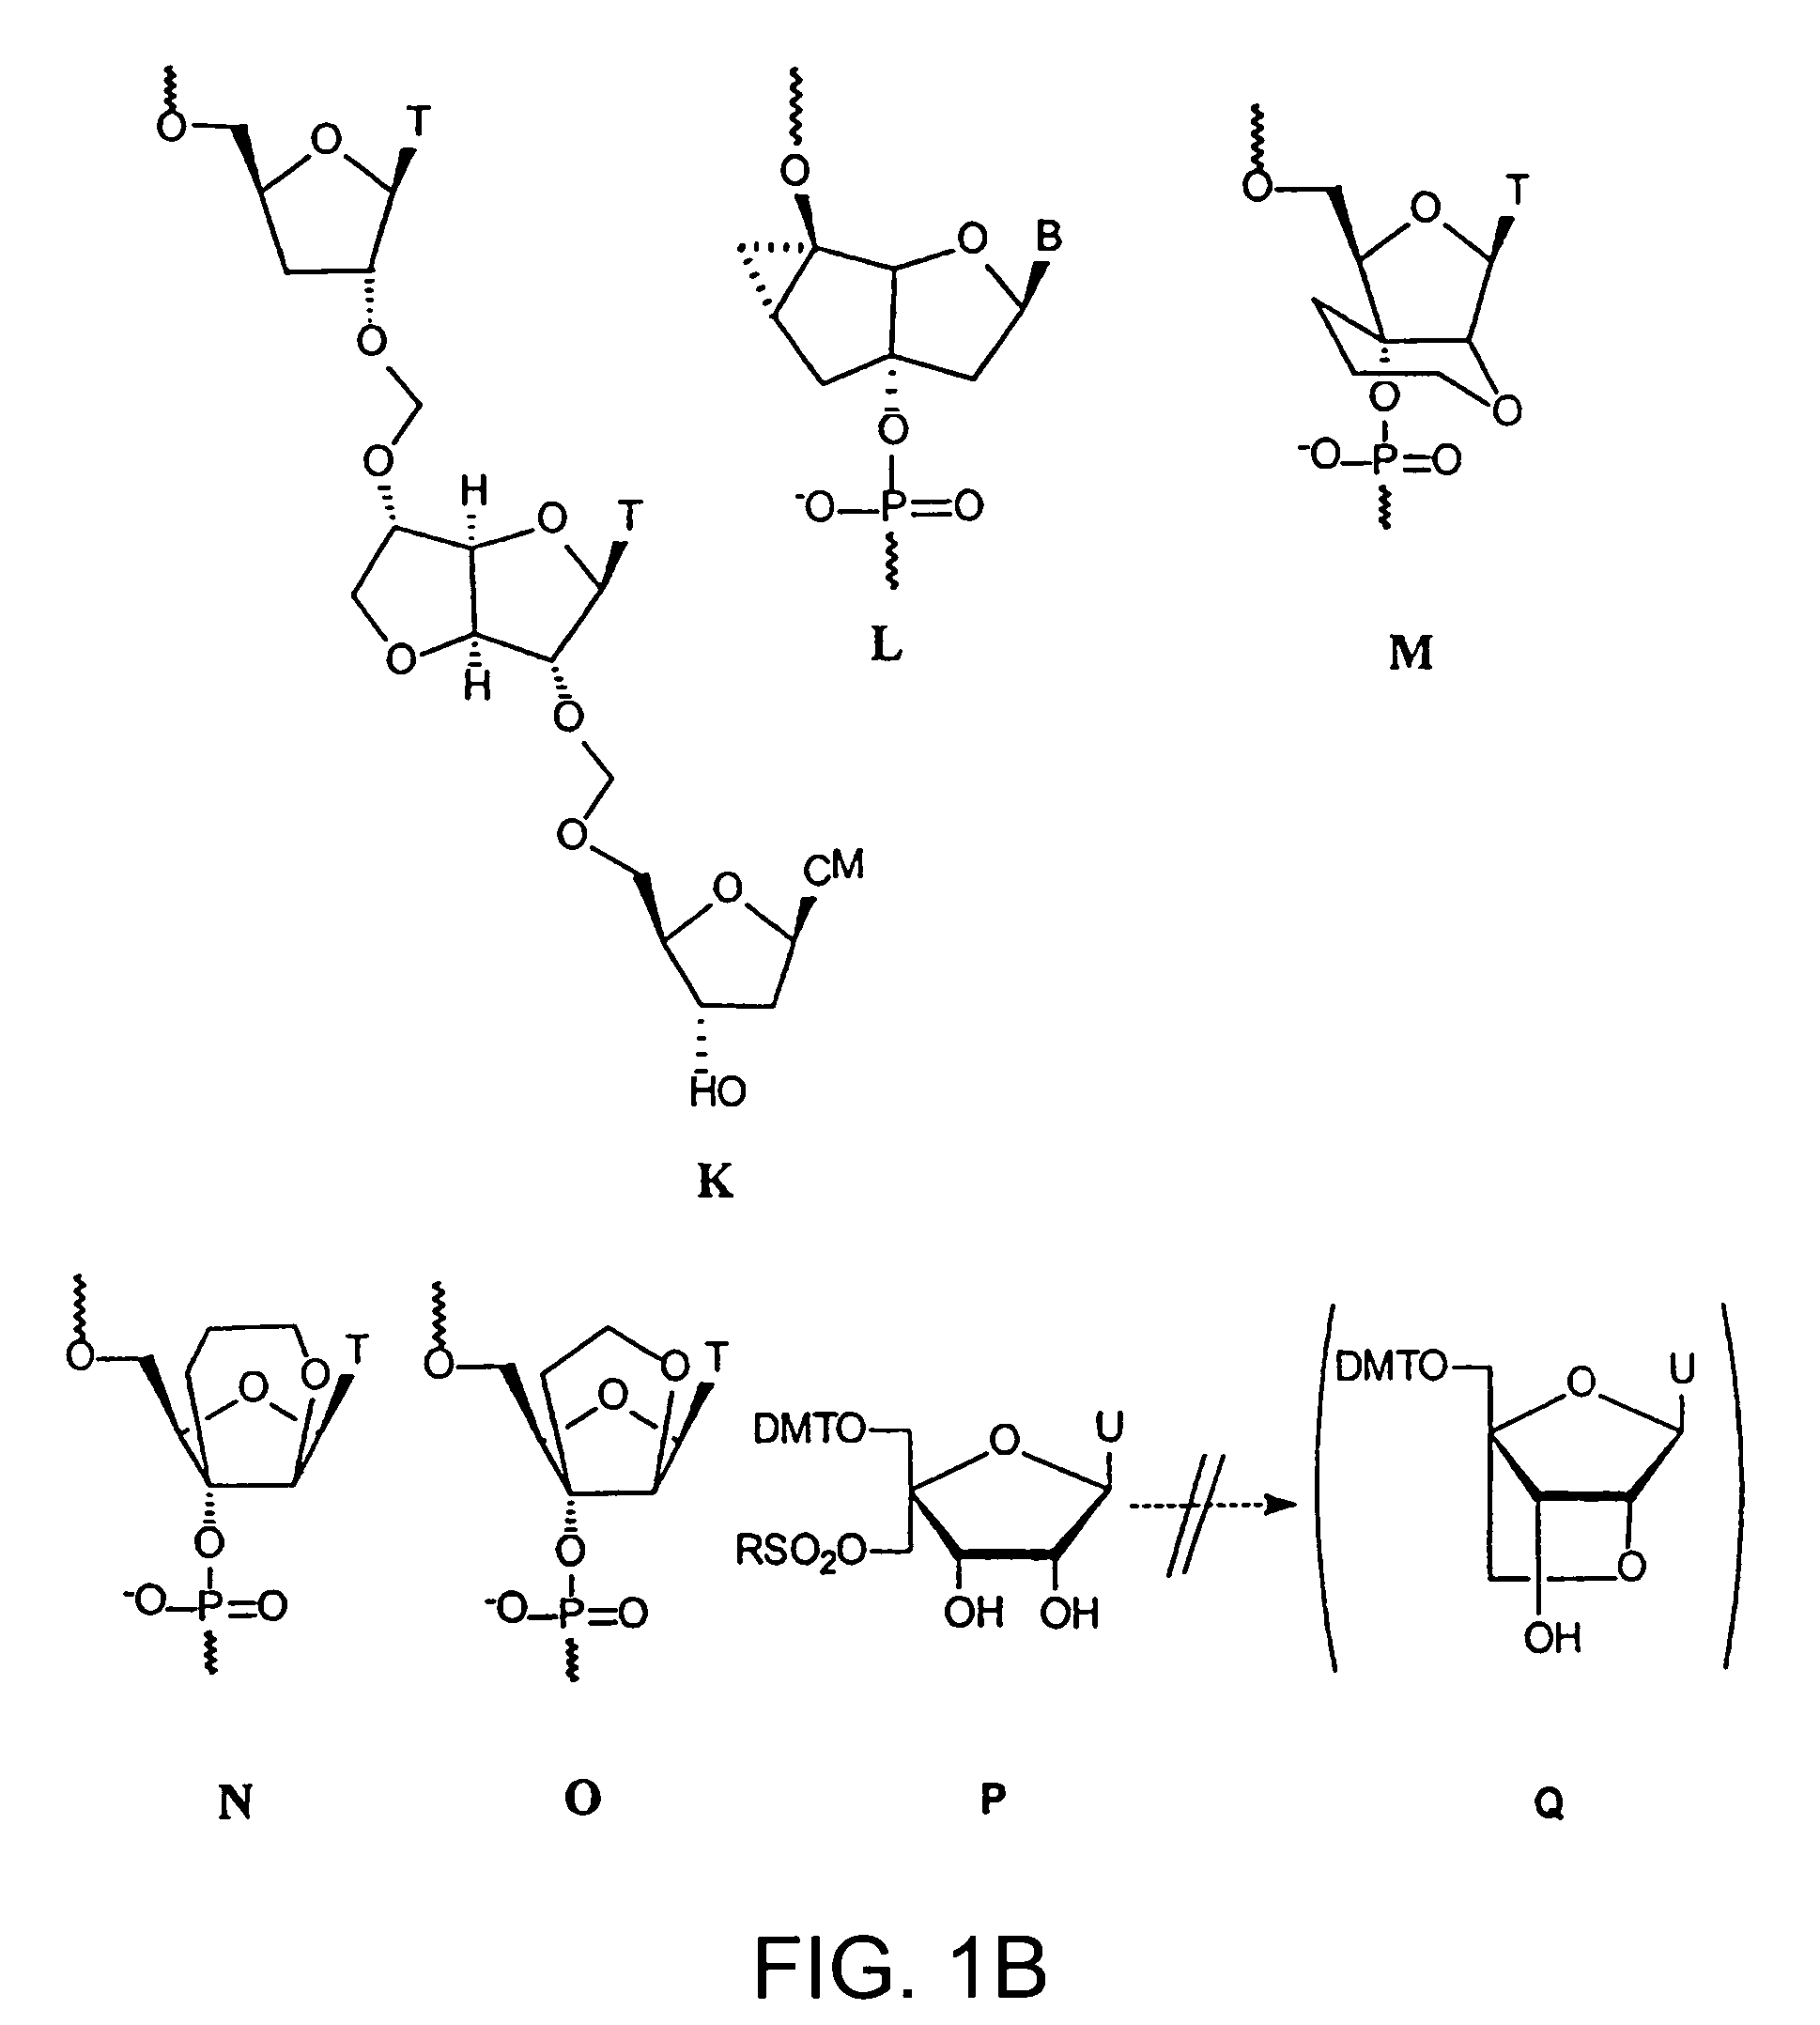 Oligonucleotide analogues